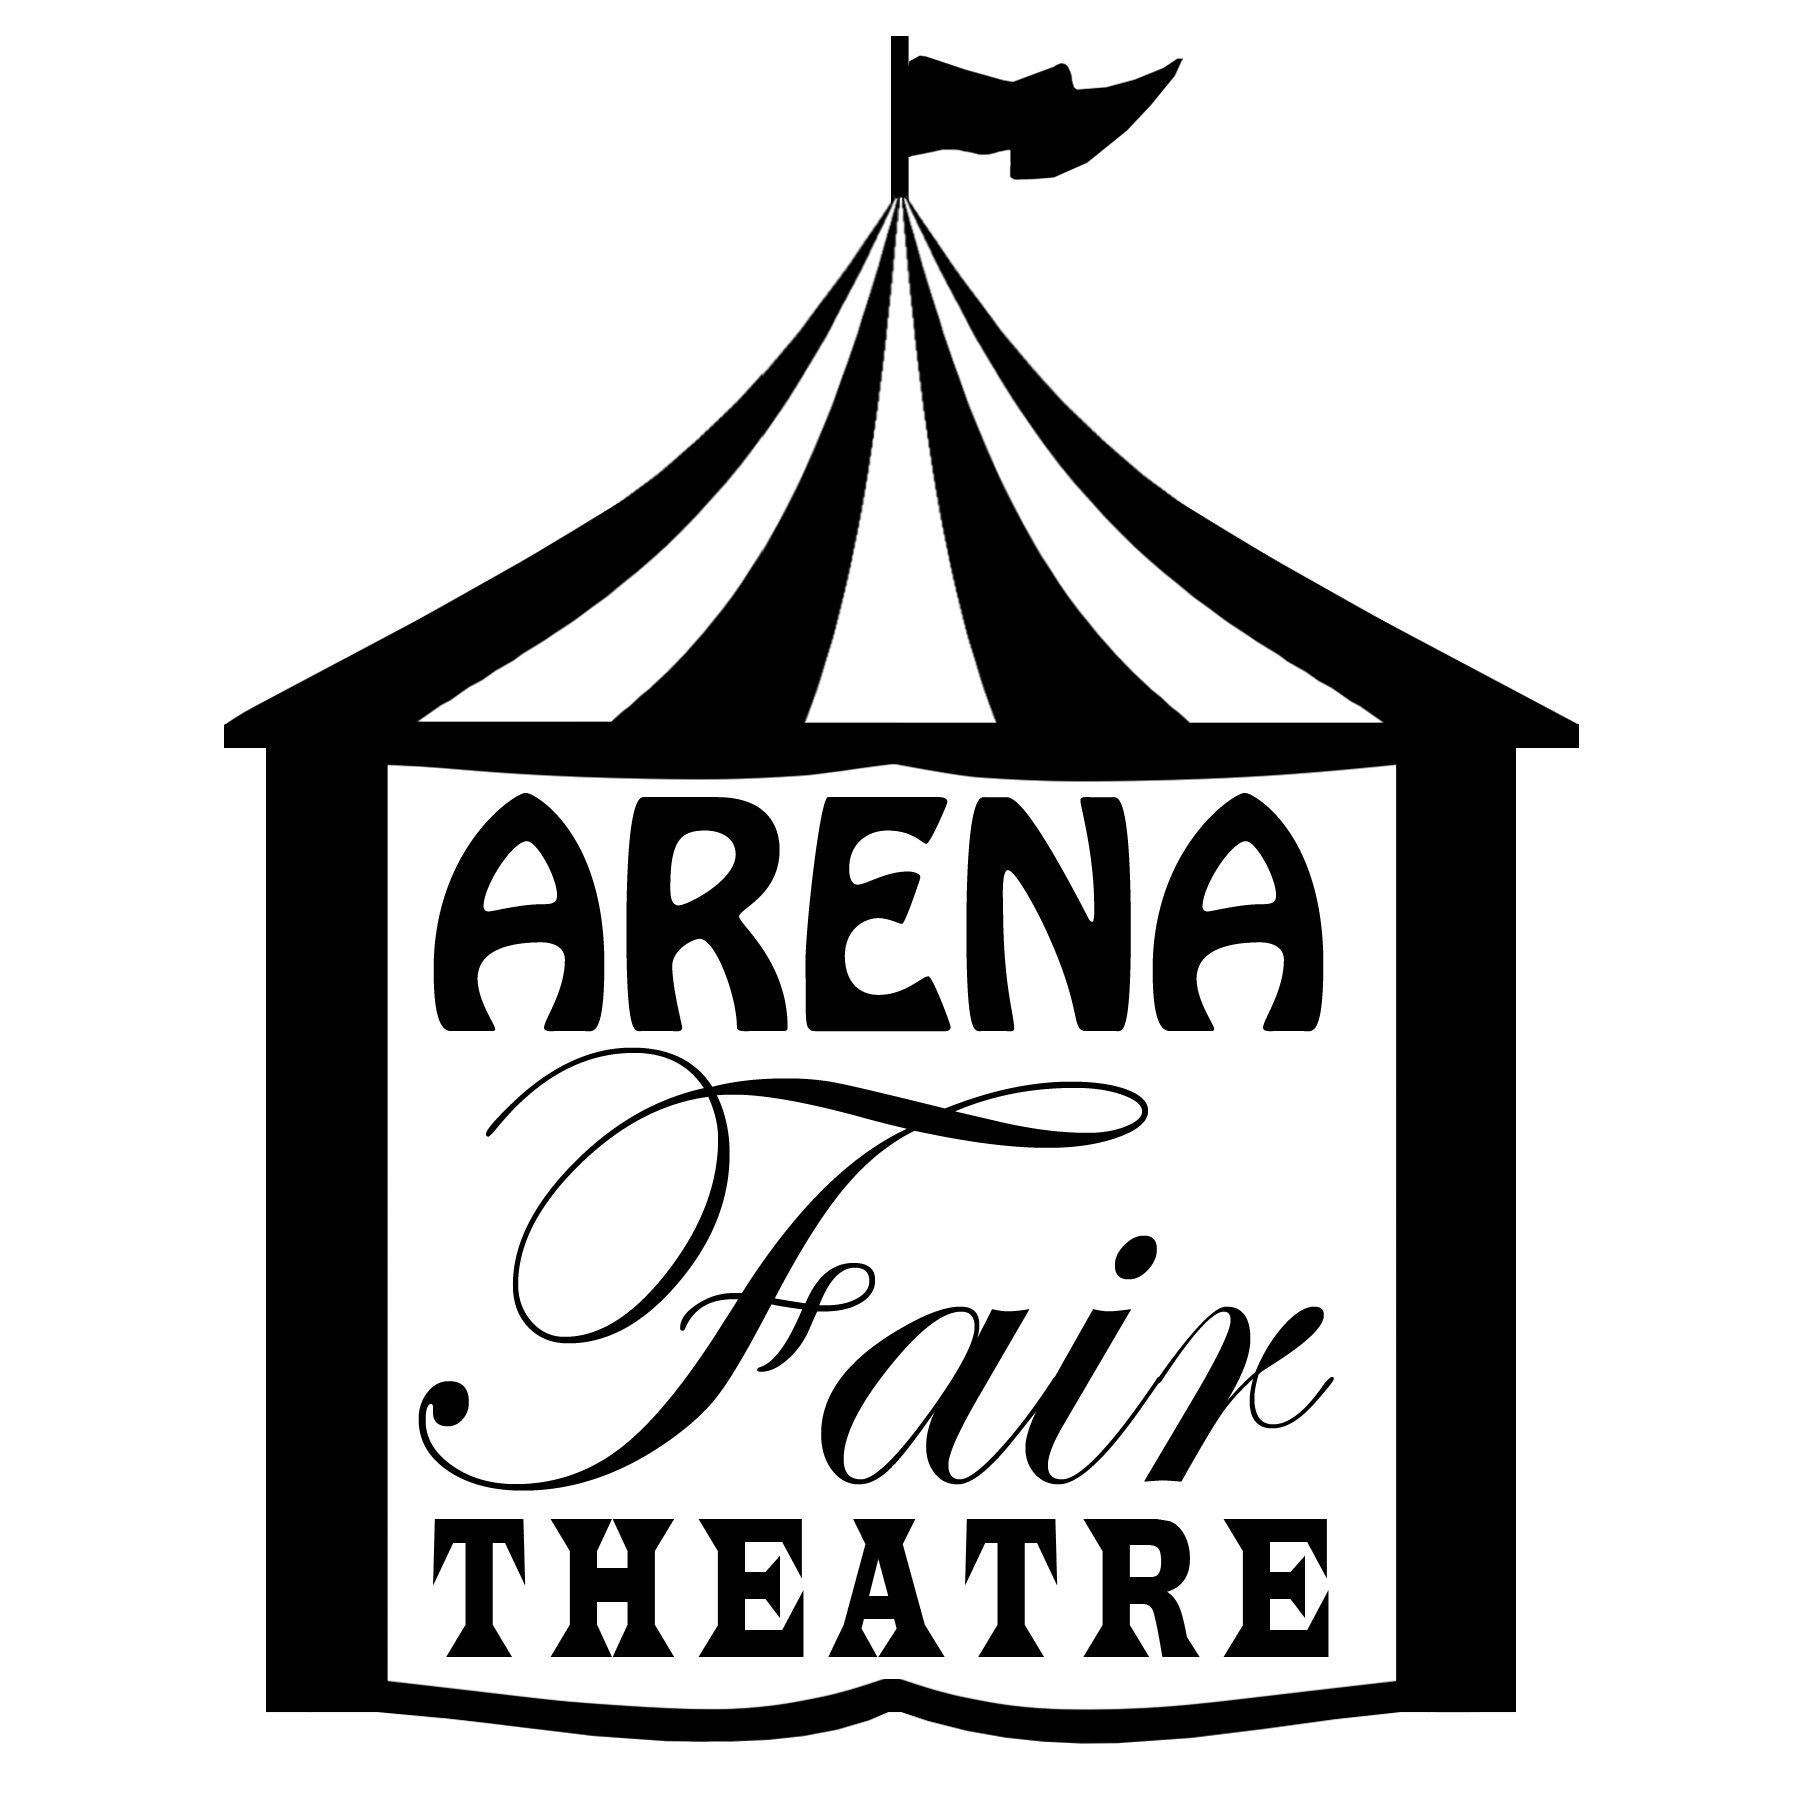 Arena Fair